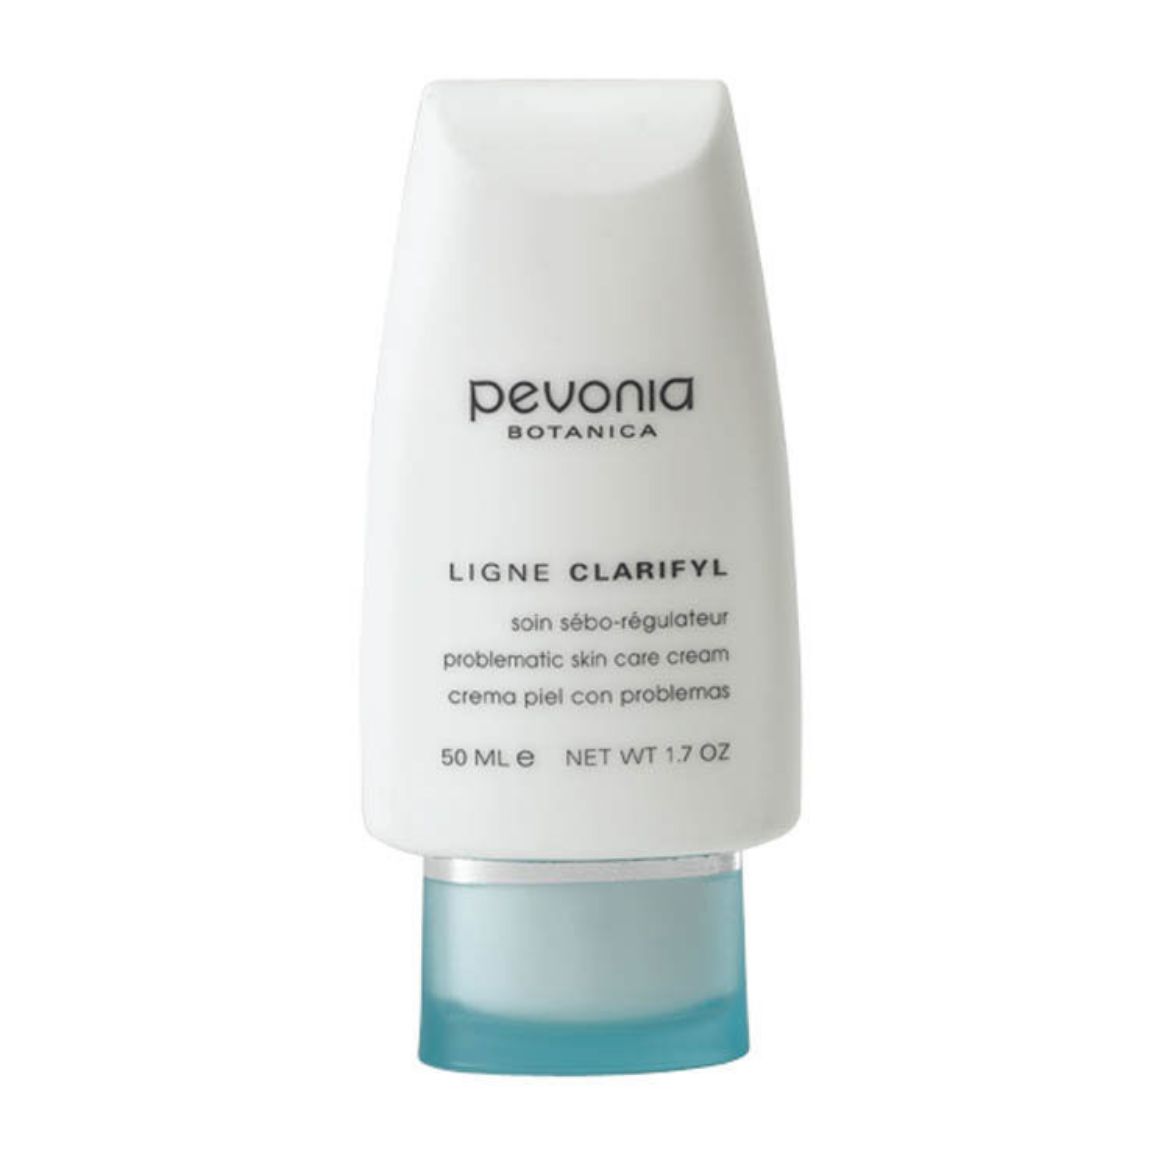 Immagine di Pevonia Problematic Skin Care Cream (50ml)